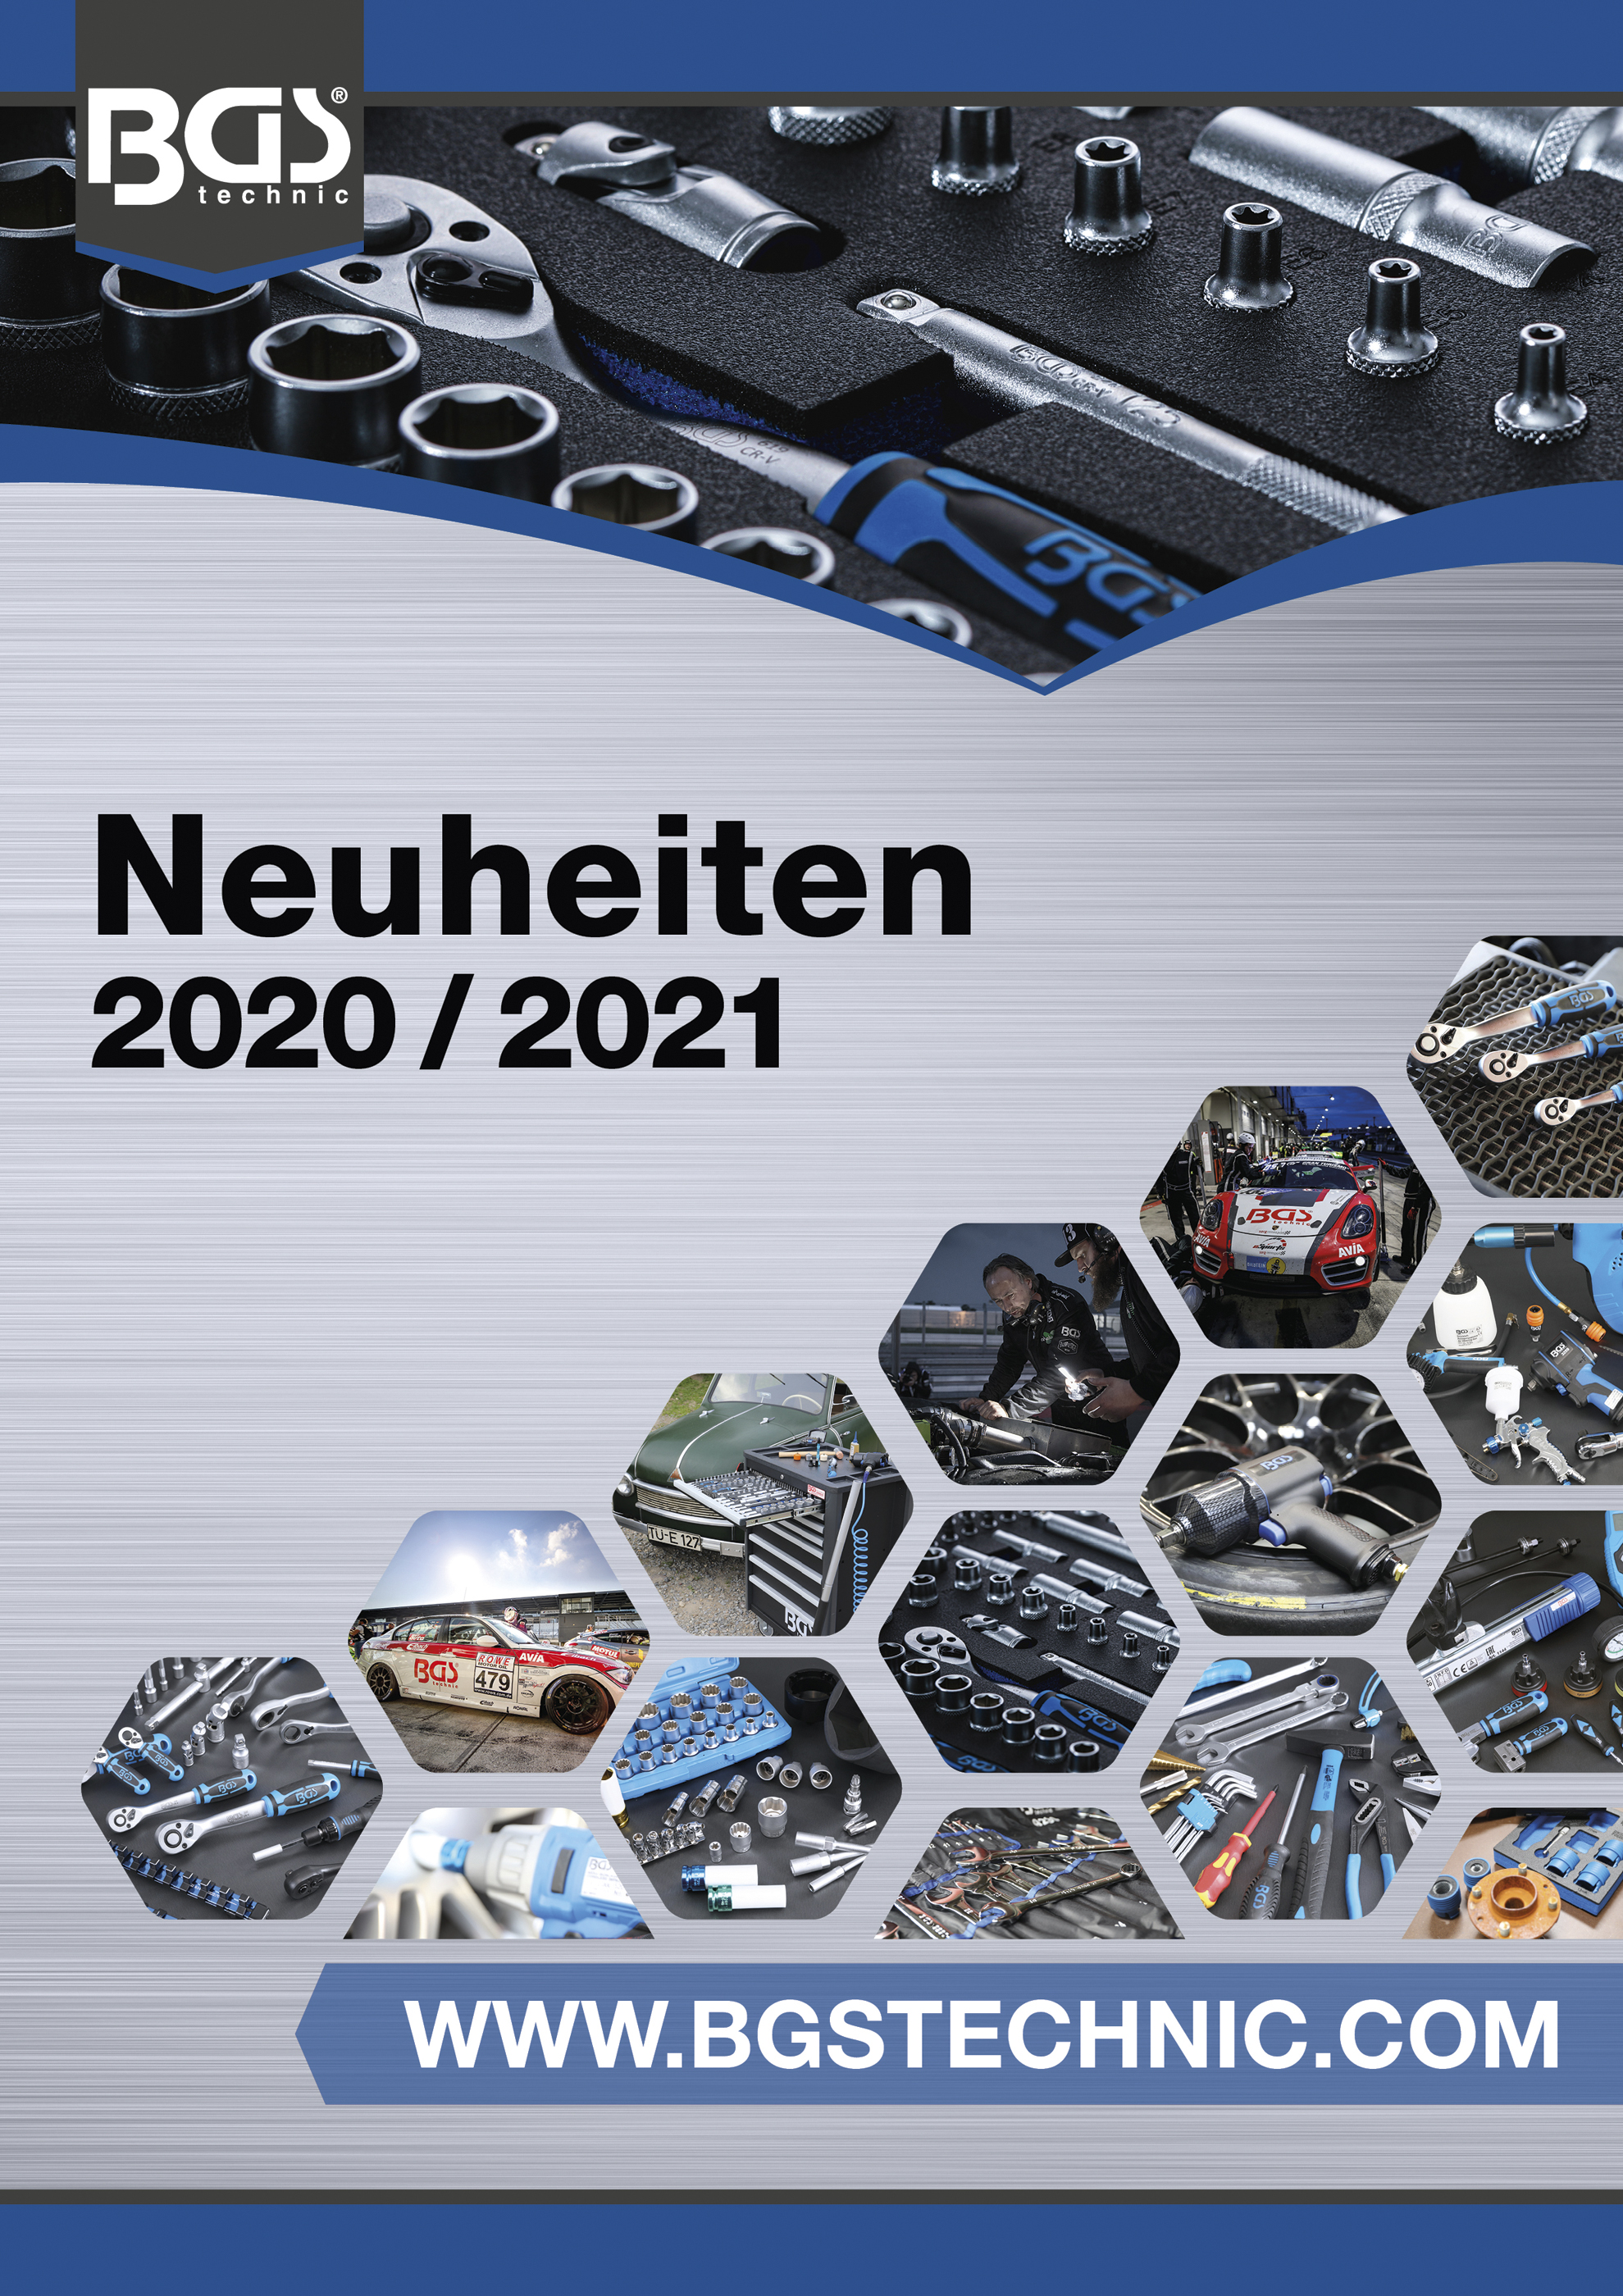 BGS Neuheiten-Katalog 2020/2021 deutsch